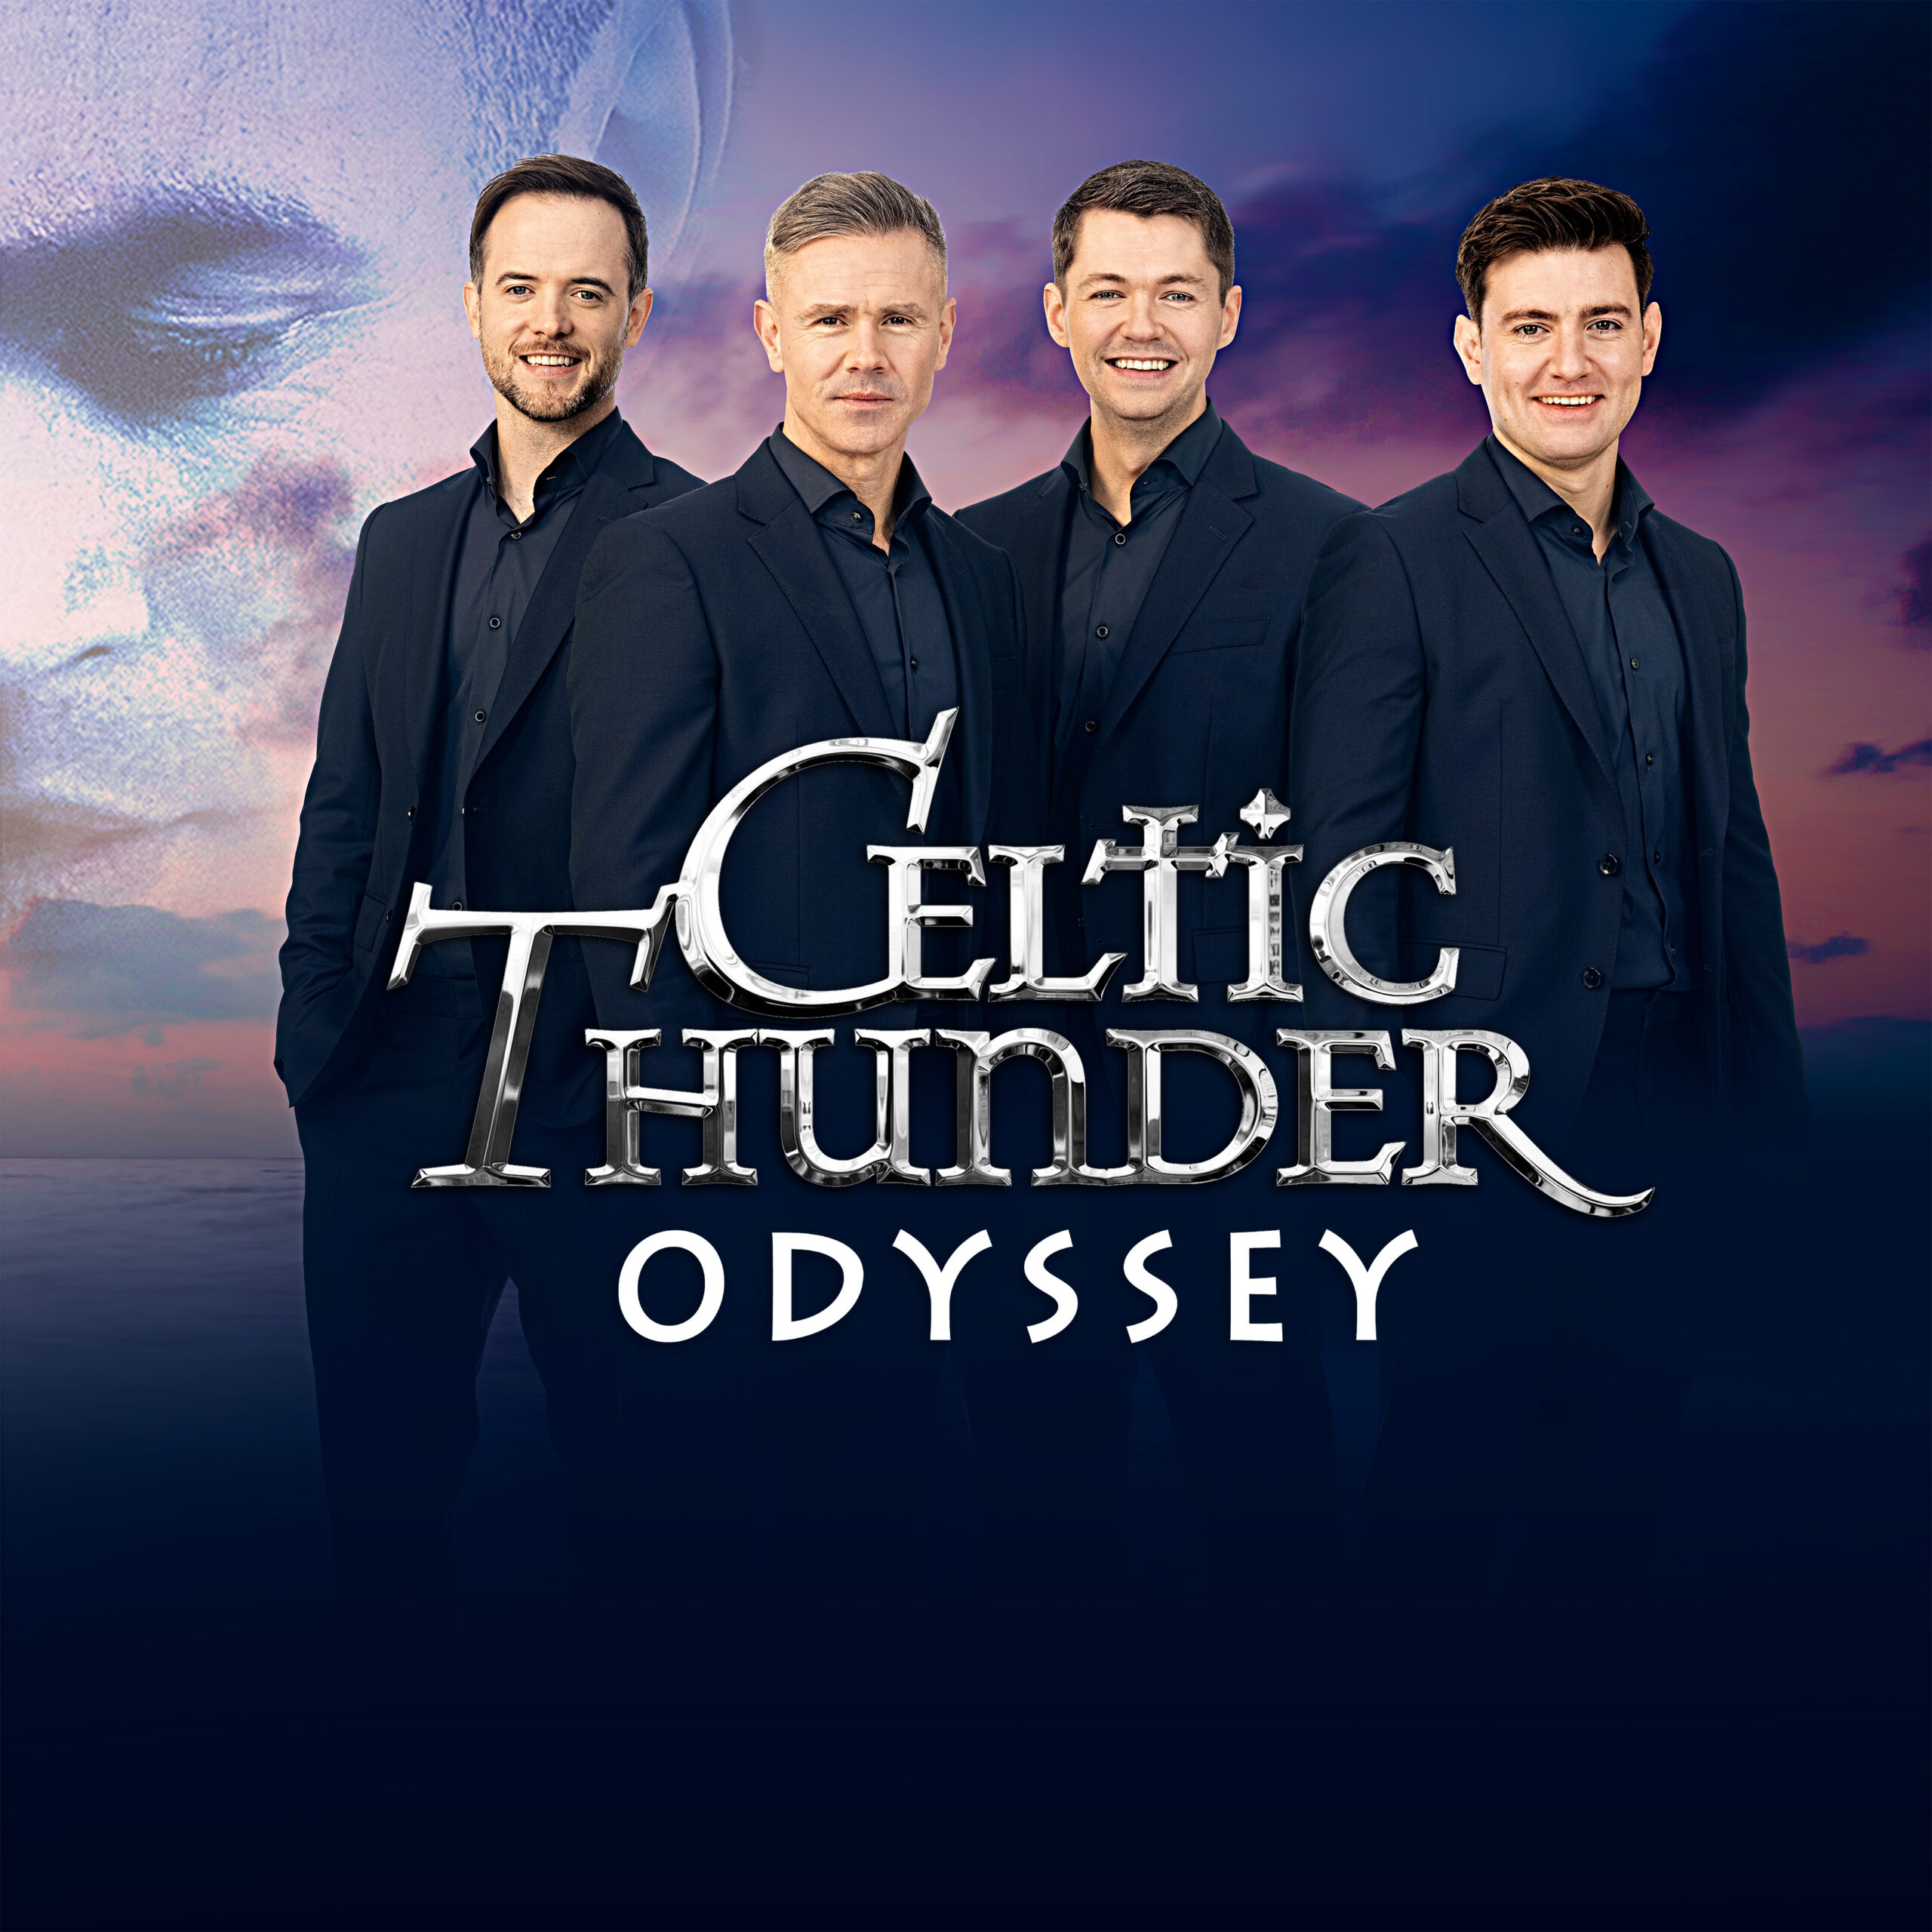 Celtic Thunder: Odyssey Tour